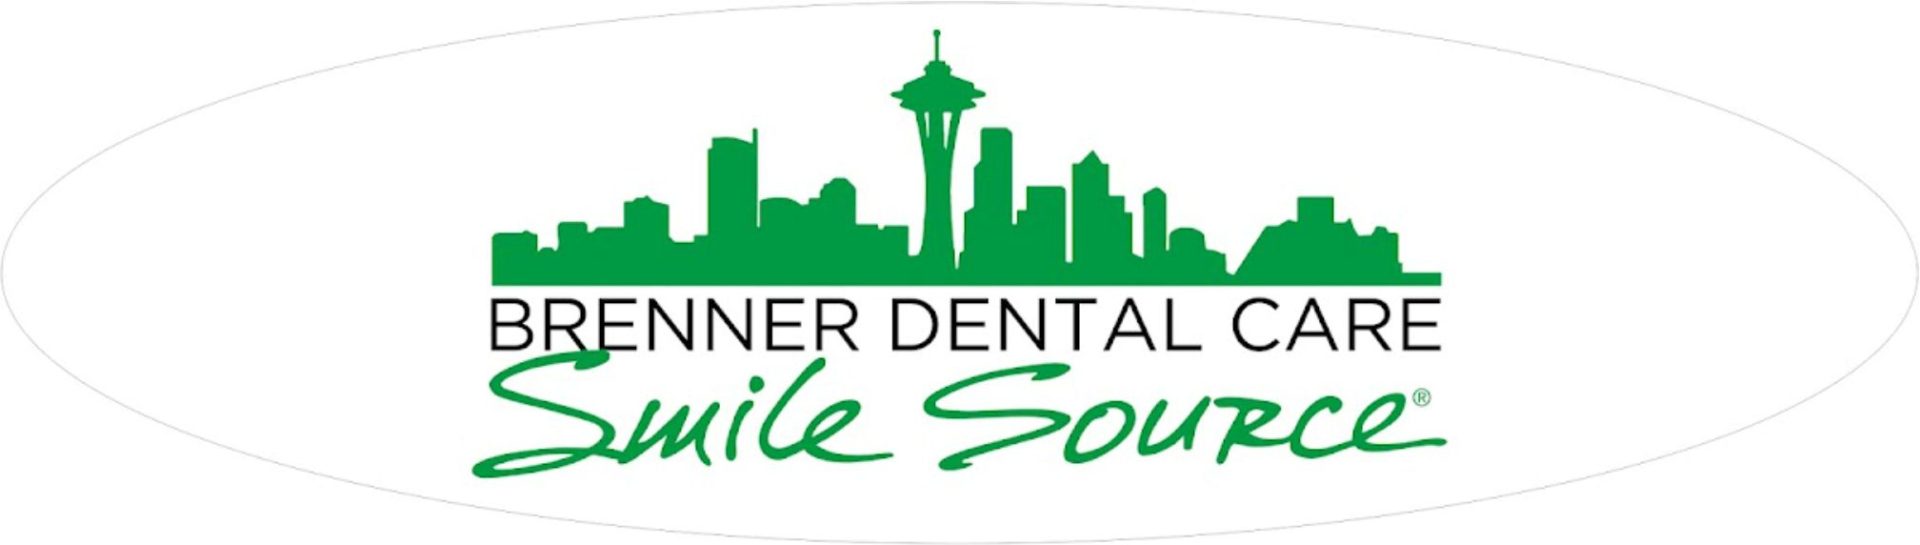 Brenner Dental Care